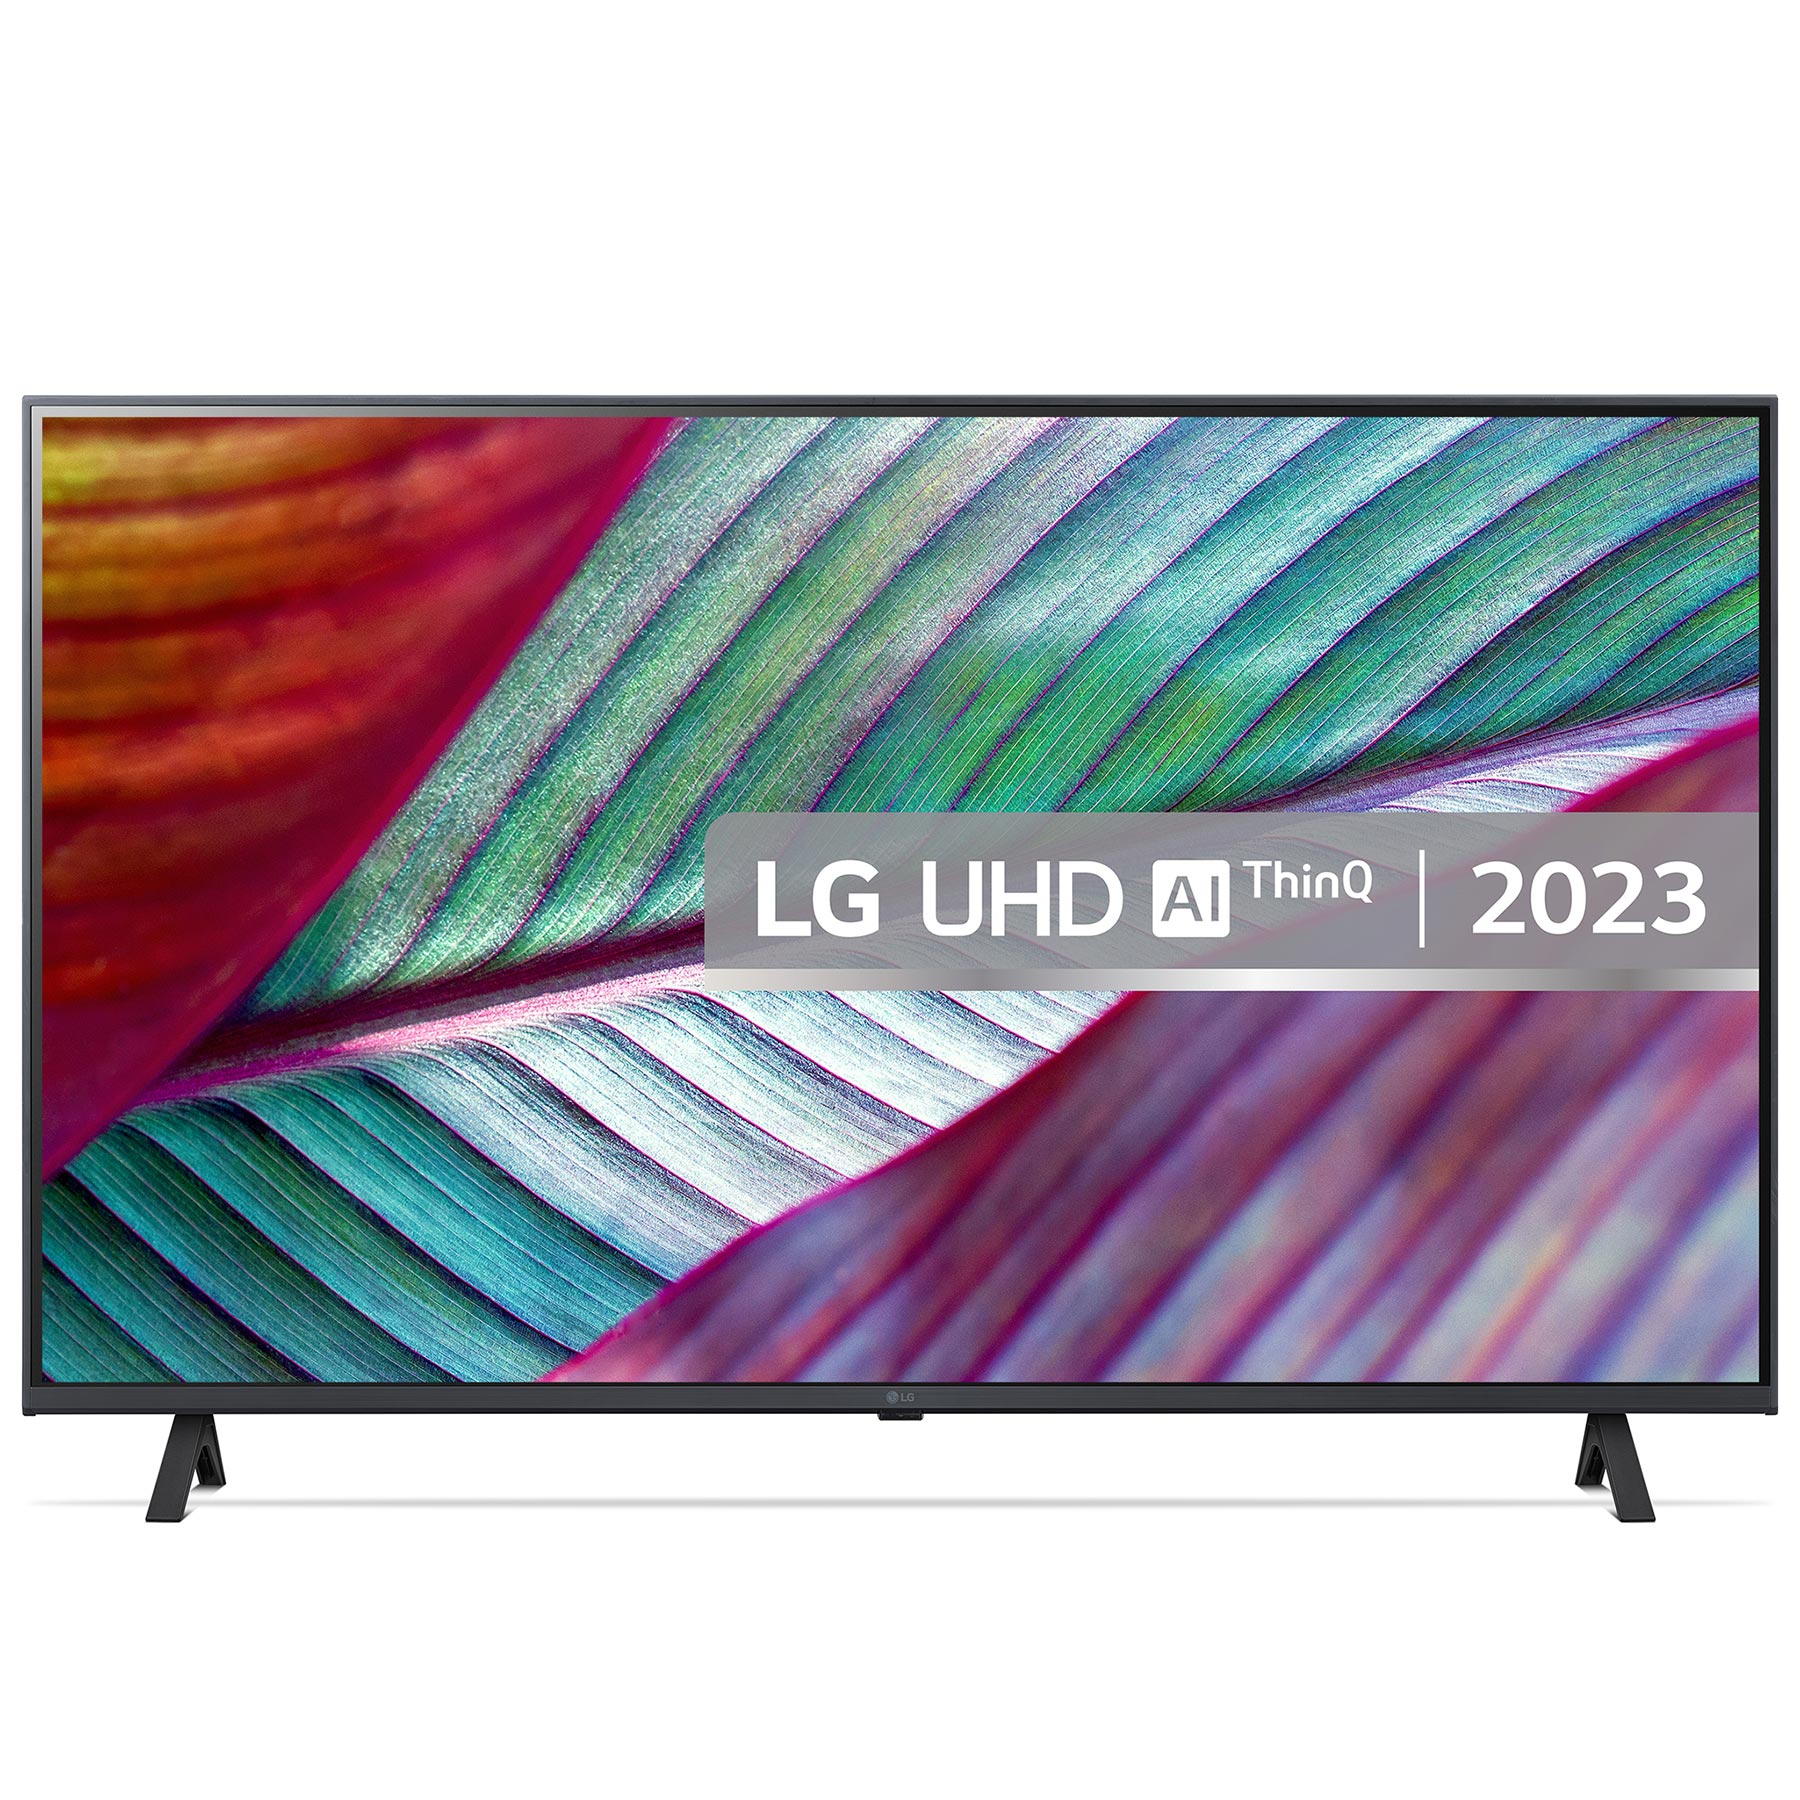 Image of LG 43UR78006LK 43 4K HDR UHD Smart LED TV HDR10 HLG AI Sound